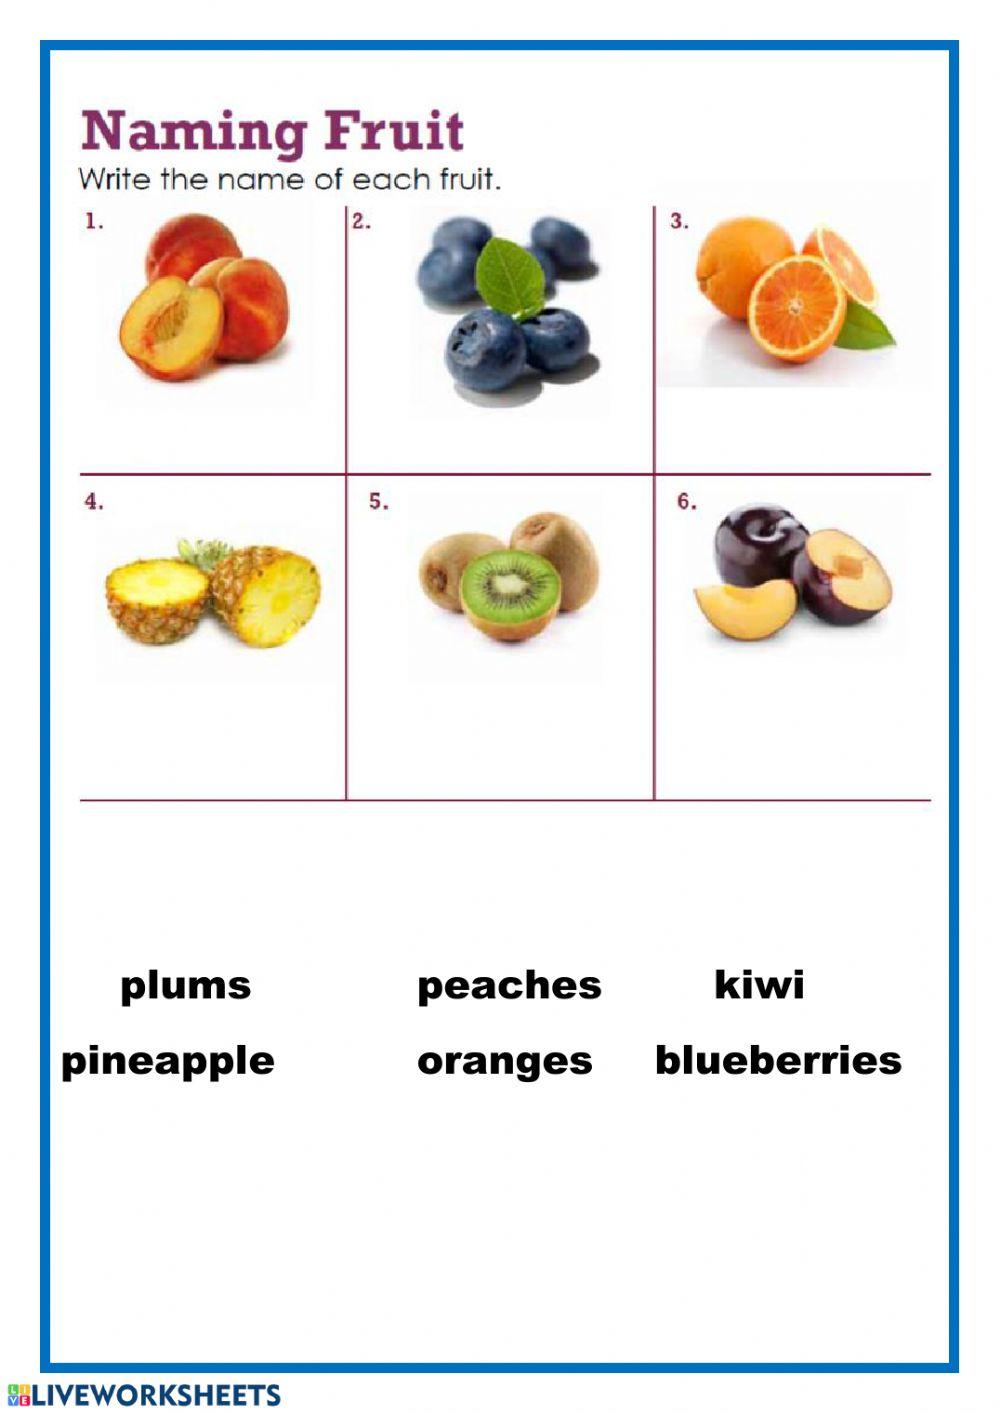 Naming fruits - 2